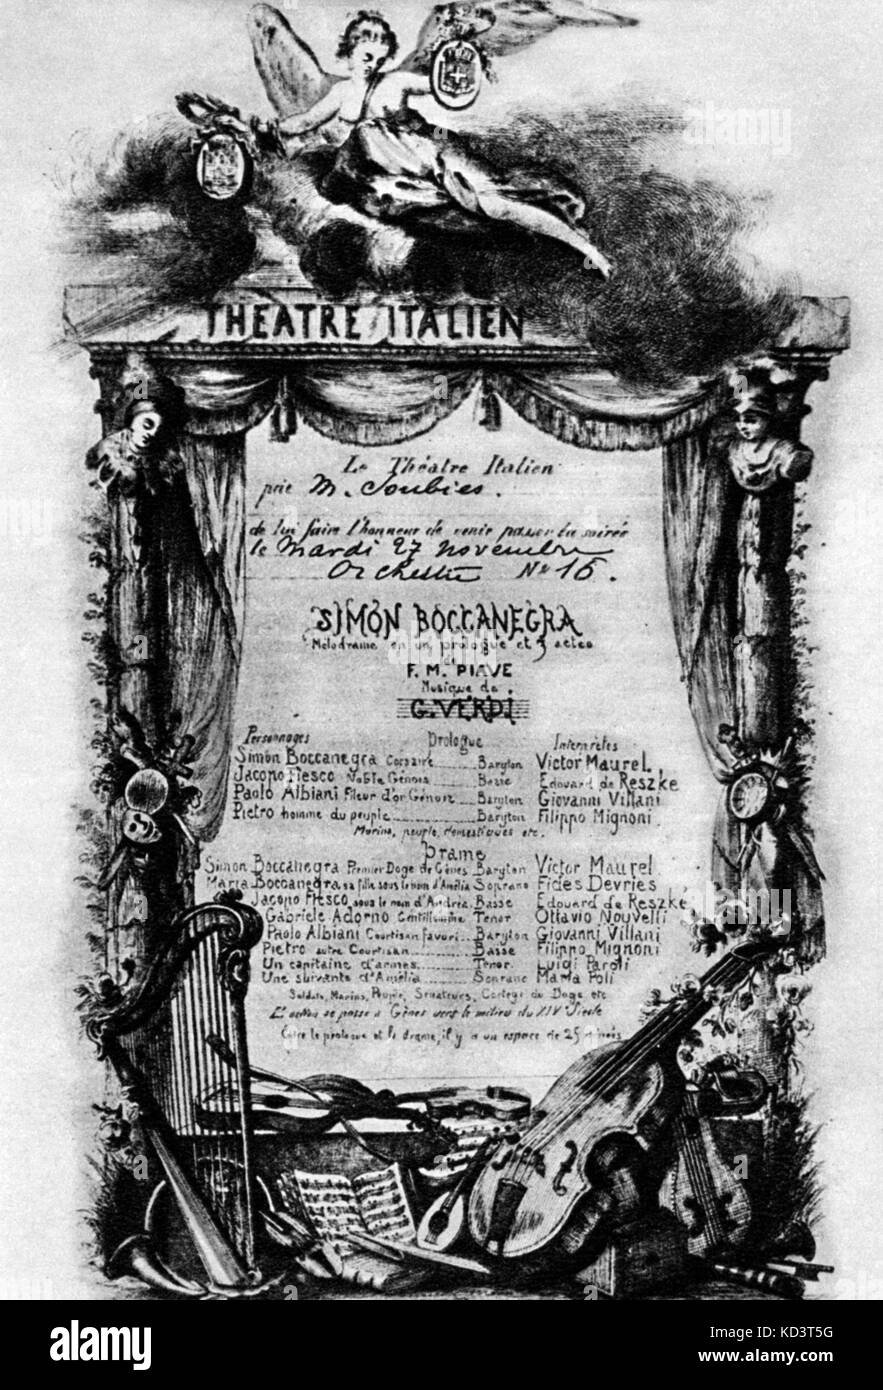 VERDI - SIMON BOCCANEGRA - poster for the opera Invitation to Italian theatre for Paris production in 1885 Italian composer (1813-1901) Stock Photo